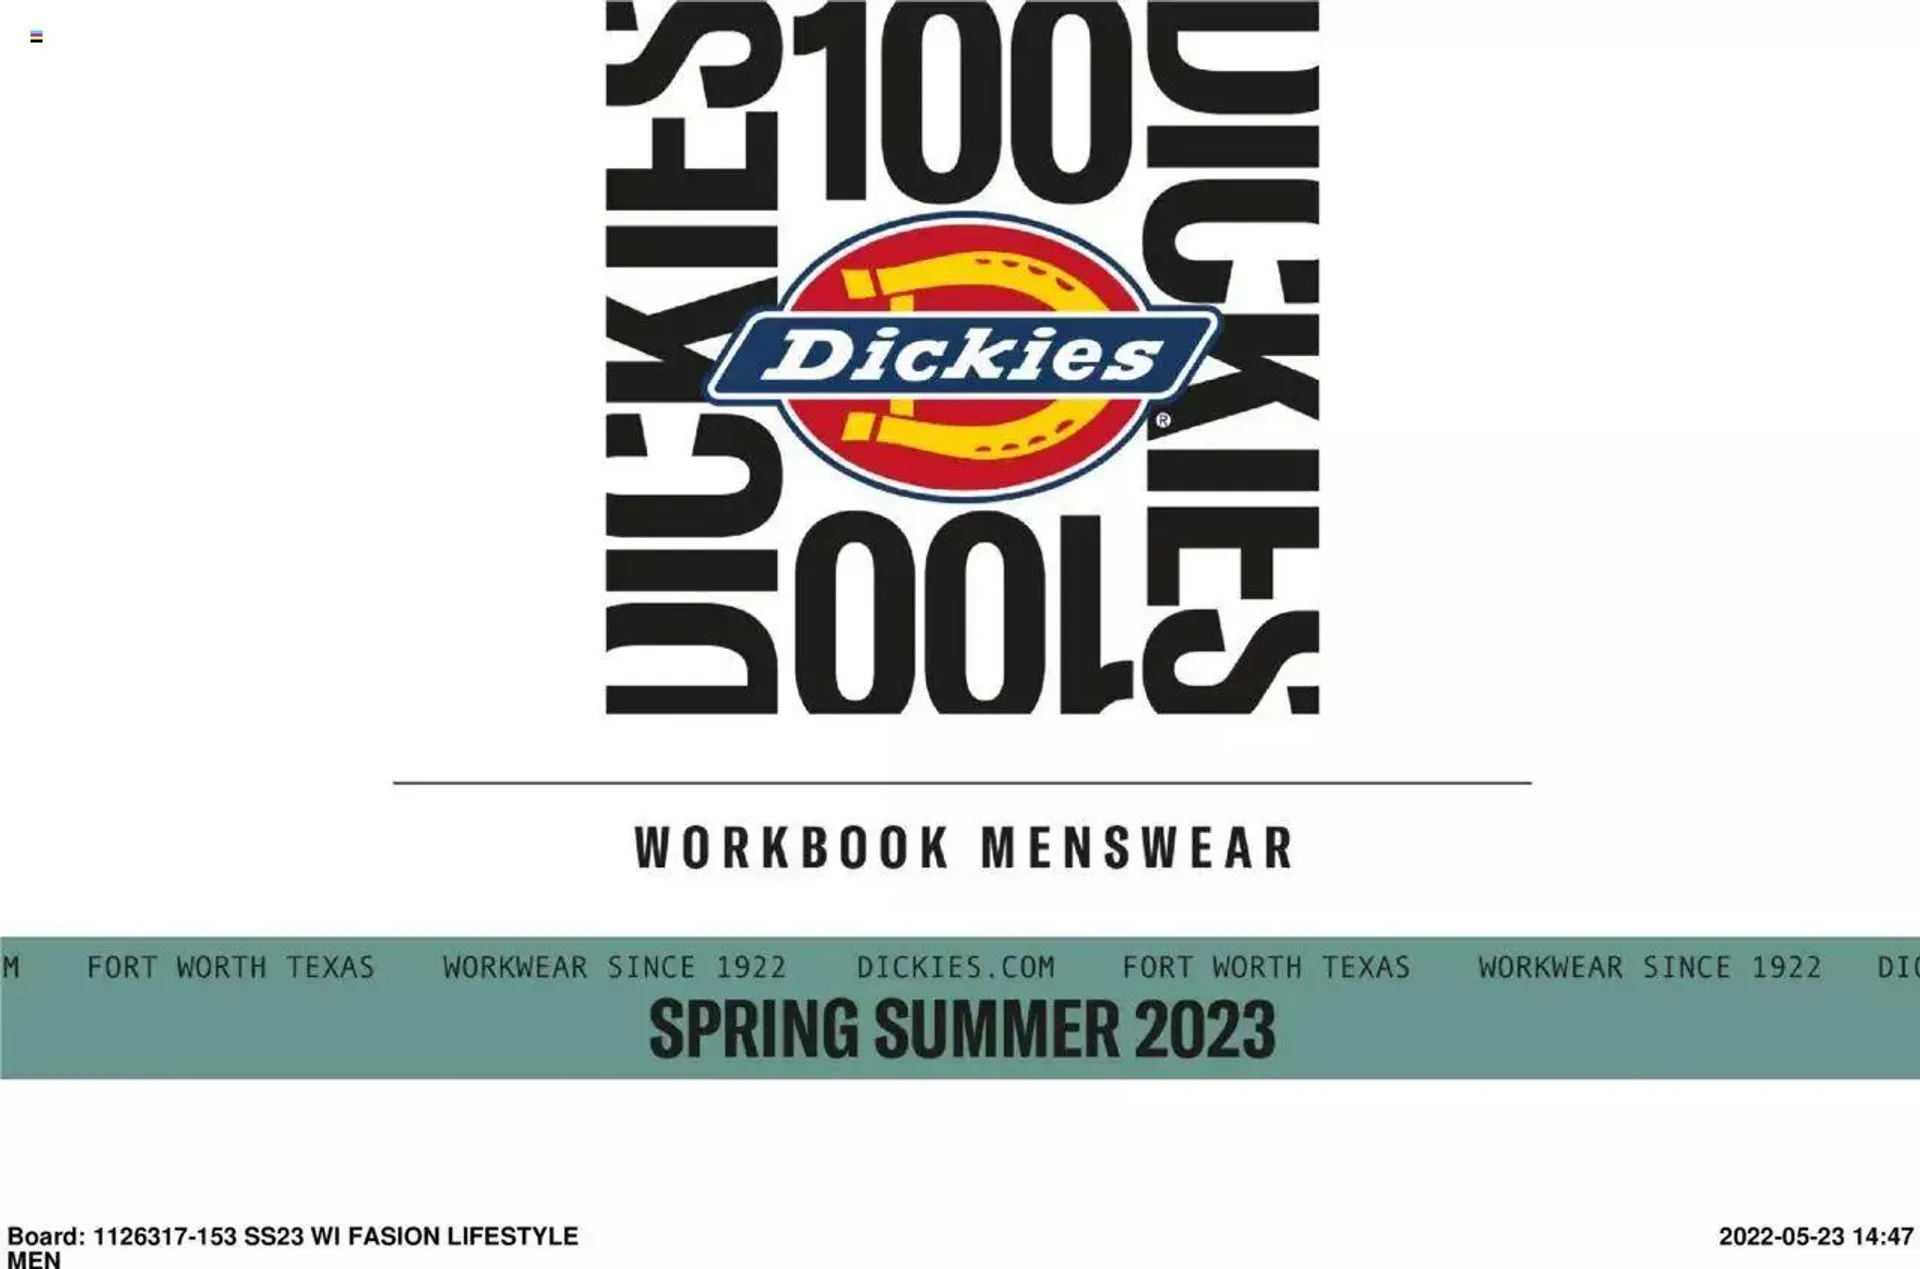 Dickies - Menswear Workbook - 152